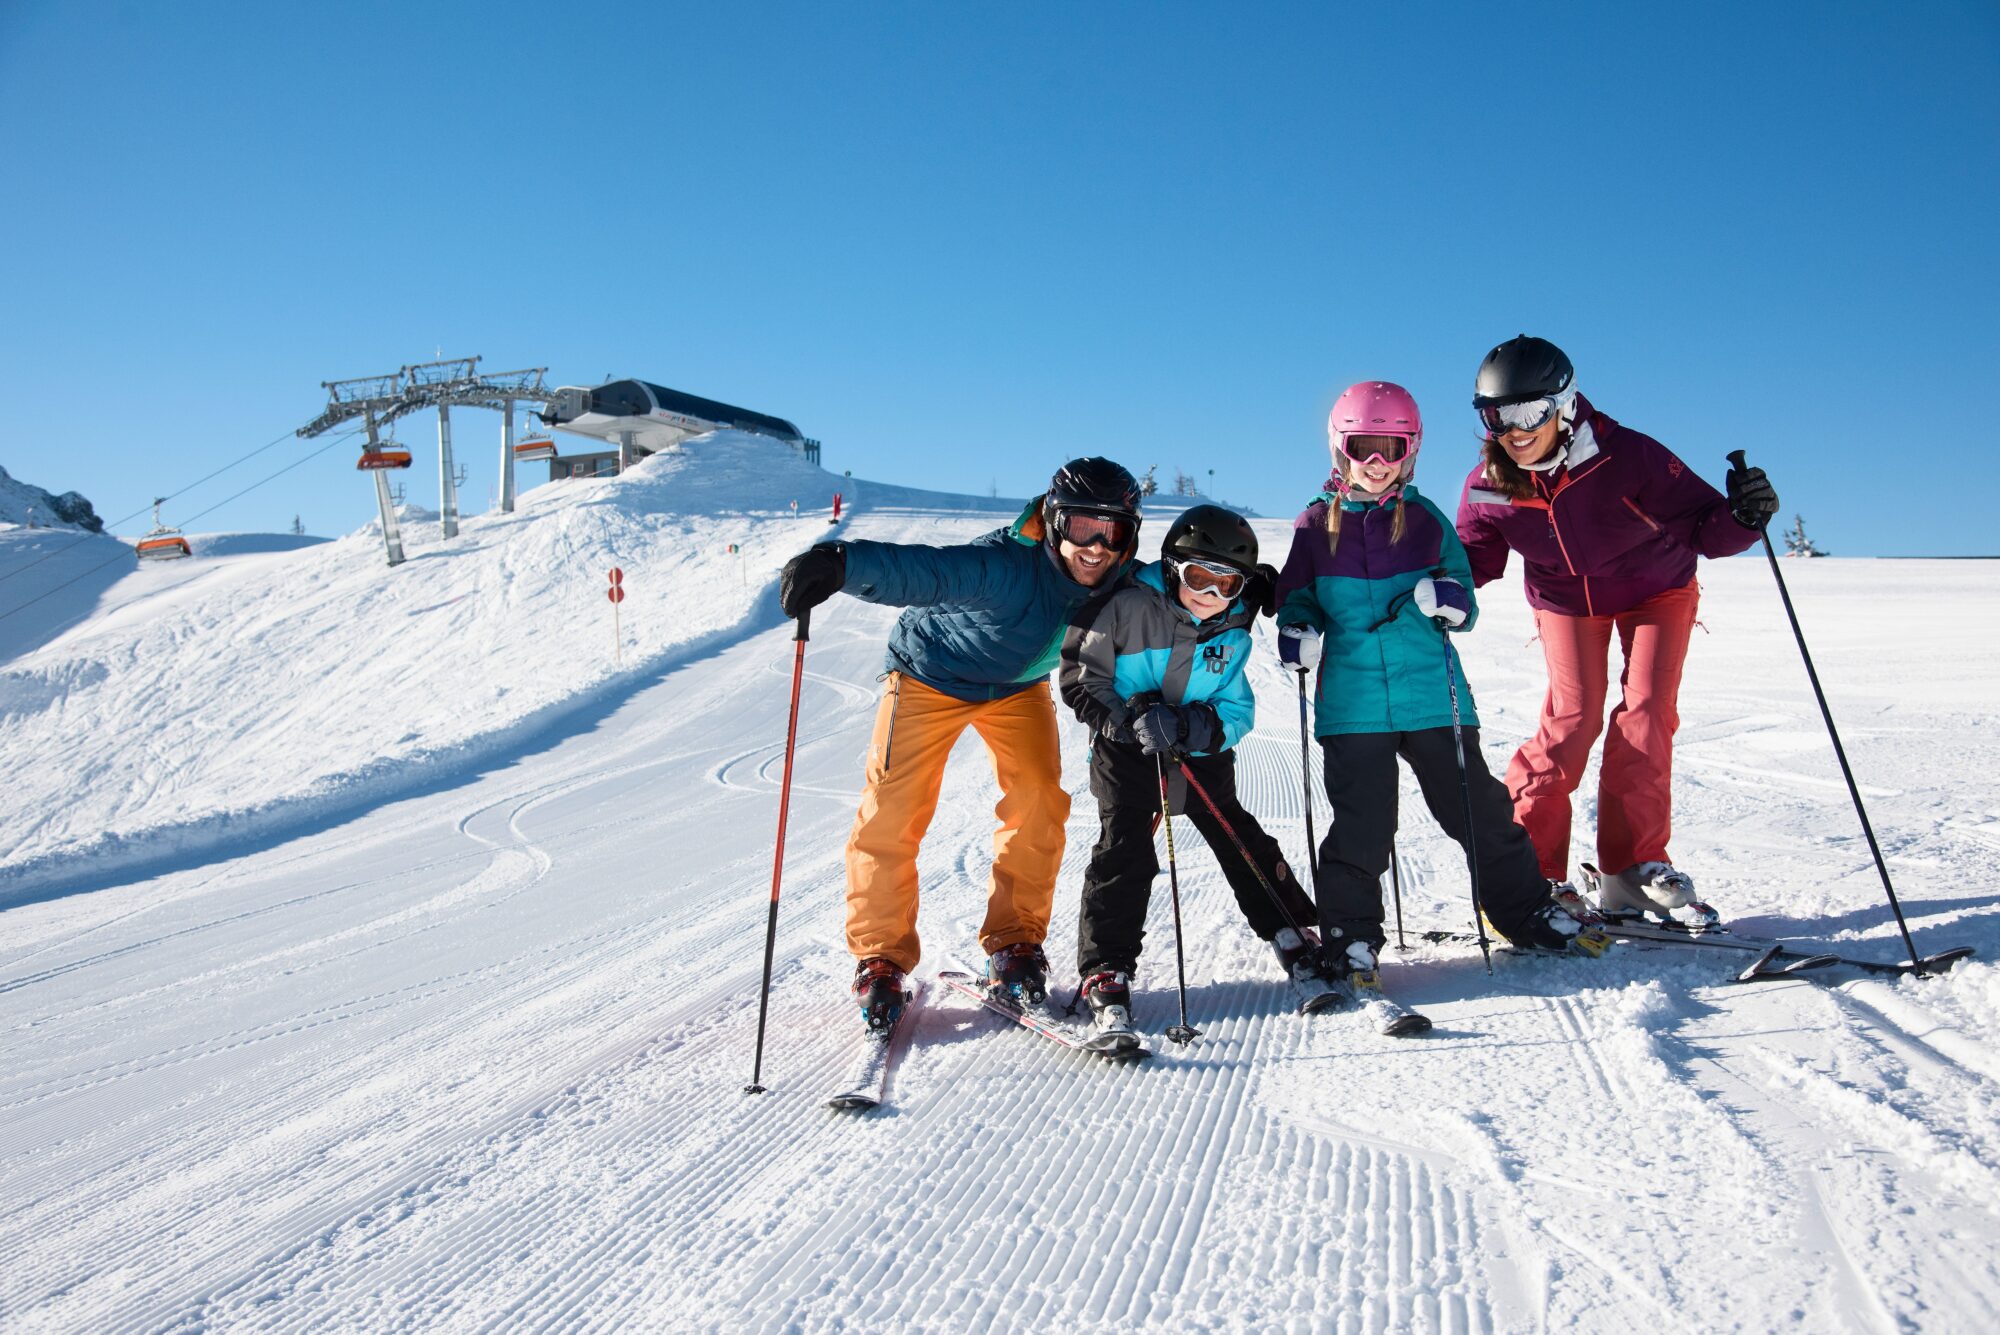 Vier kinderen poseren voor de foto op een skipiste, op een heldere dag in de bergen. Ze hebben alle vier ski's aan. In de achtergrond zie je de skilift bovenkomen.